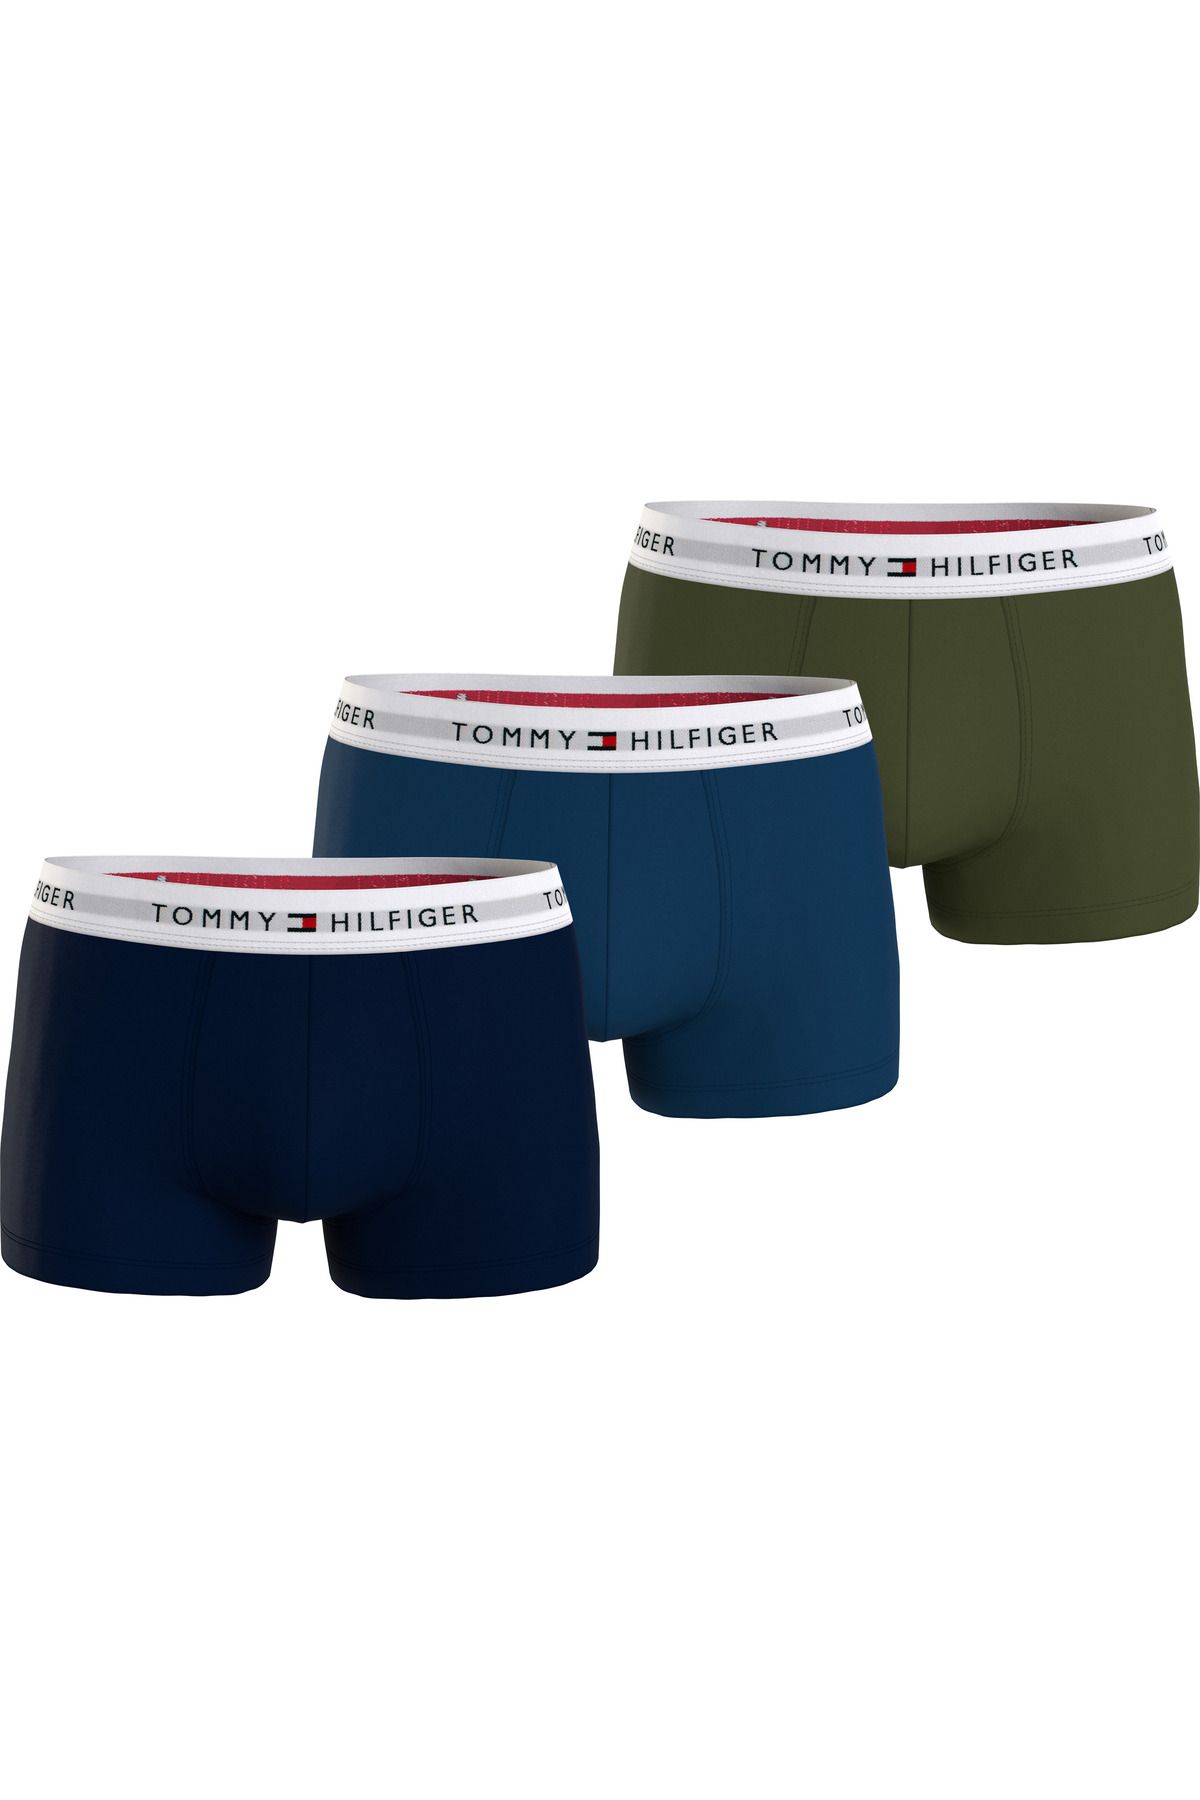 Tommy Hilfiger Erkek Marka Logolu Elastik Bantlı Günlük Kullanıma Uygun Lacivert-yeşil-mavi Boxer Um0um02761-0sr